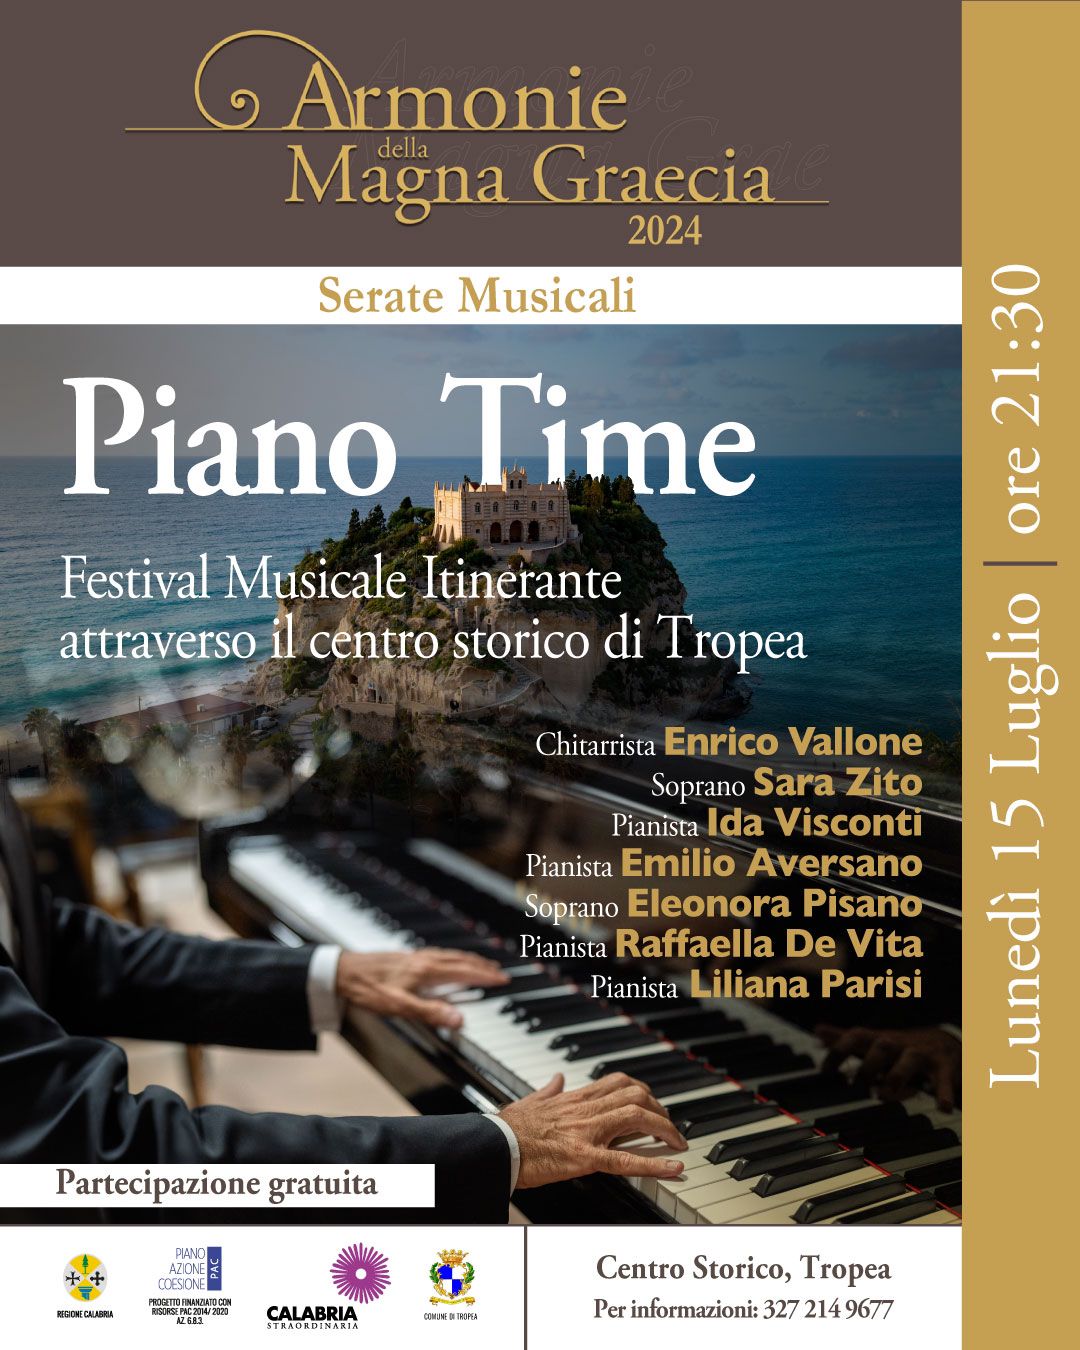 PIANO TIME: Festival Musicale Itinerante attraverso il centro storico di Tropea